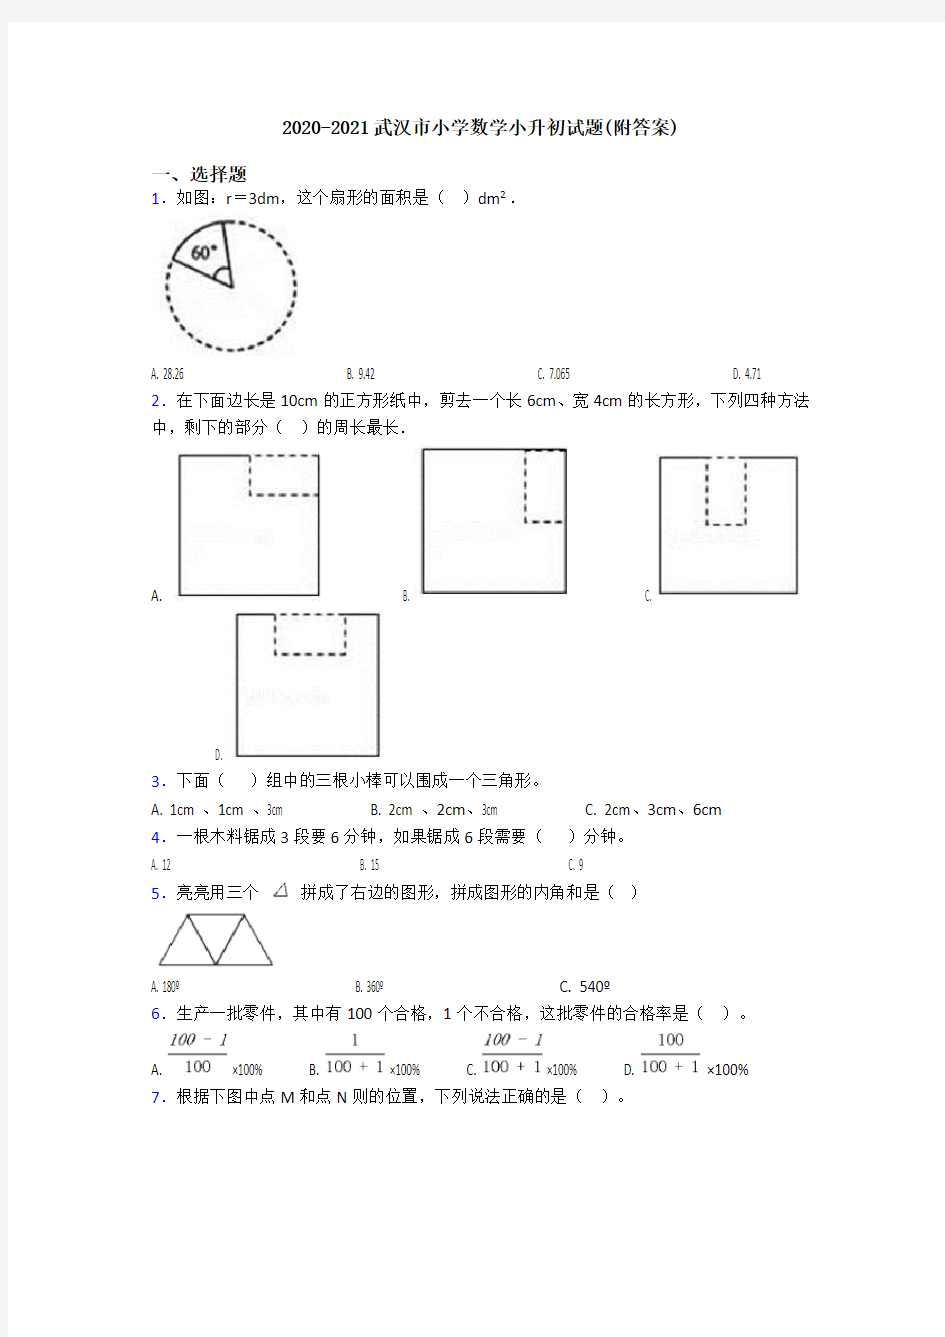 2020-2021武汉市小学数学小升初试题(附答案)